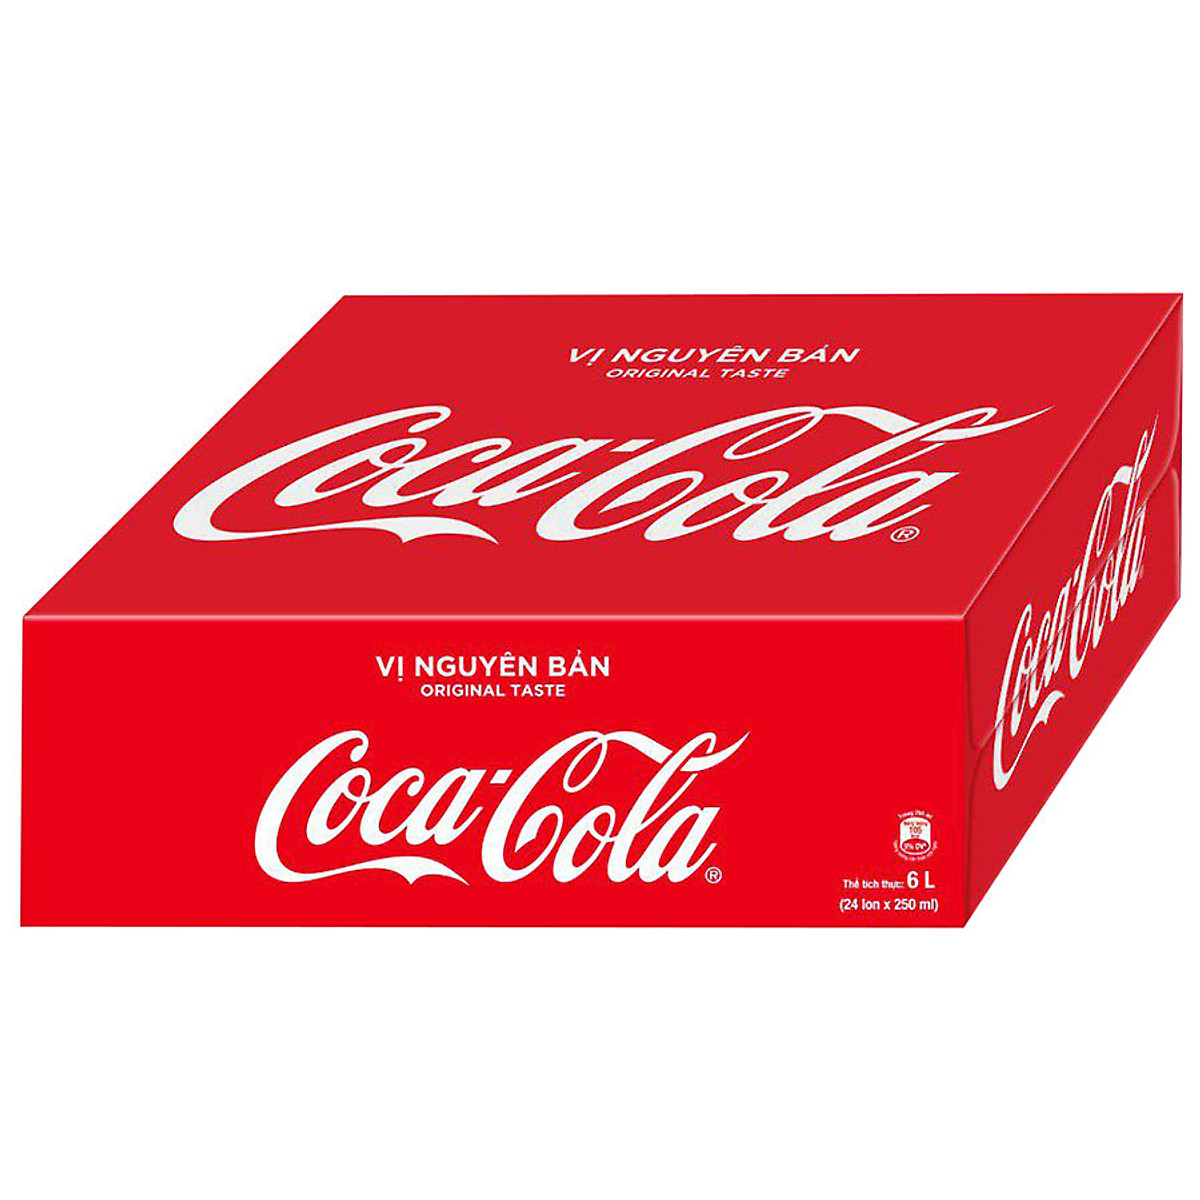 Phân tích mô hình SWOT Coca Cola 4